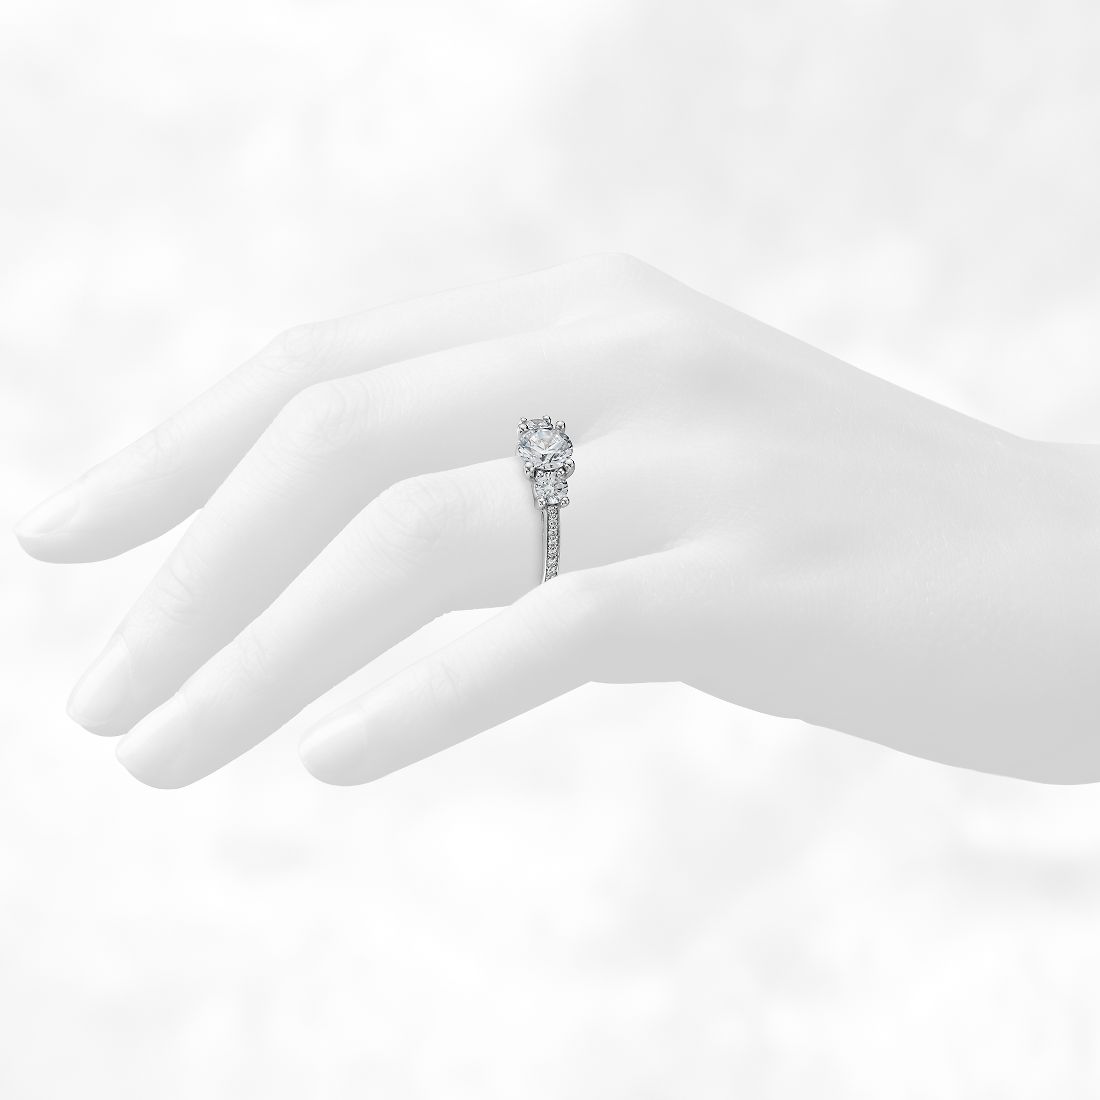 Vista lateral del anillo en una mano